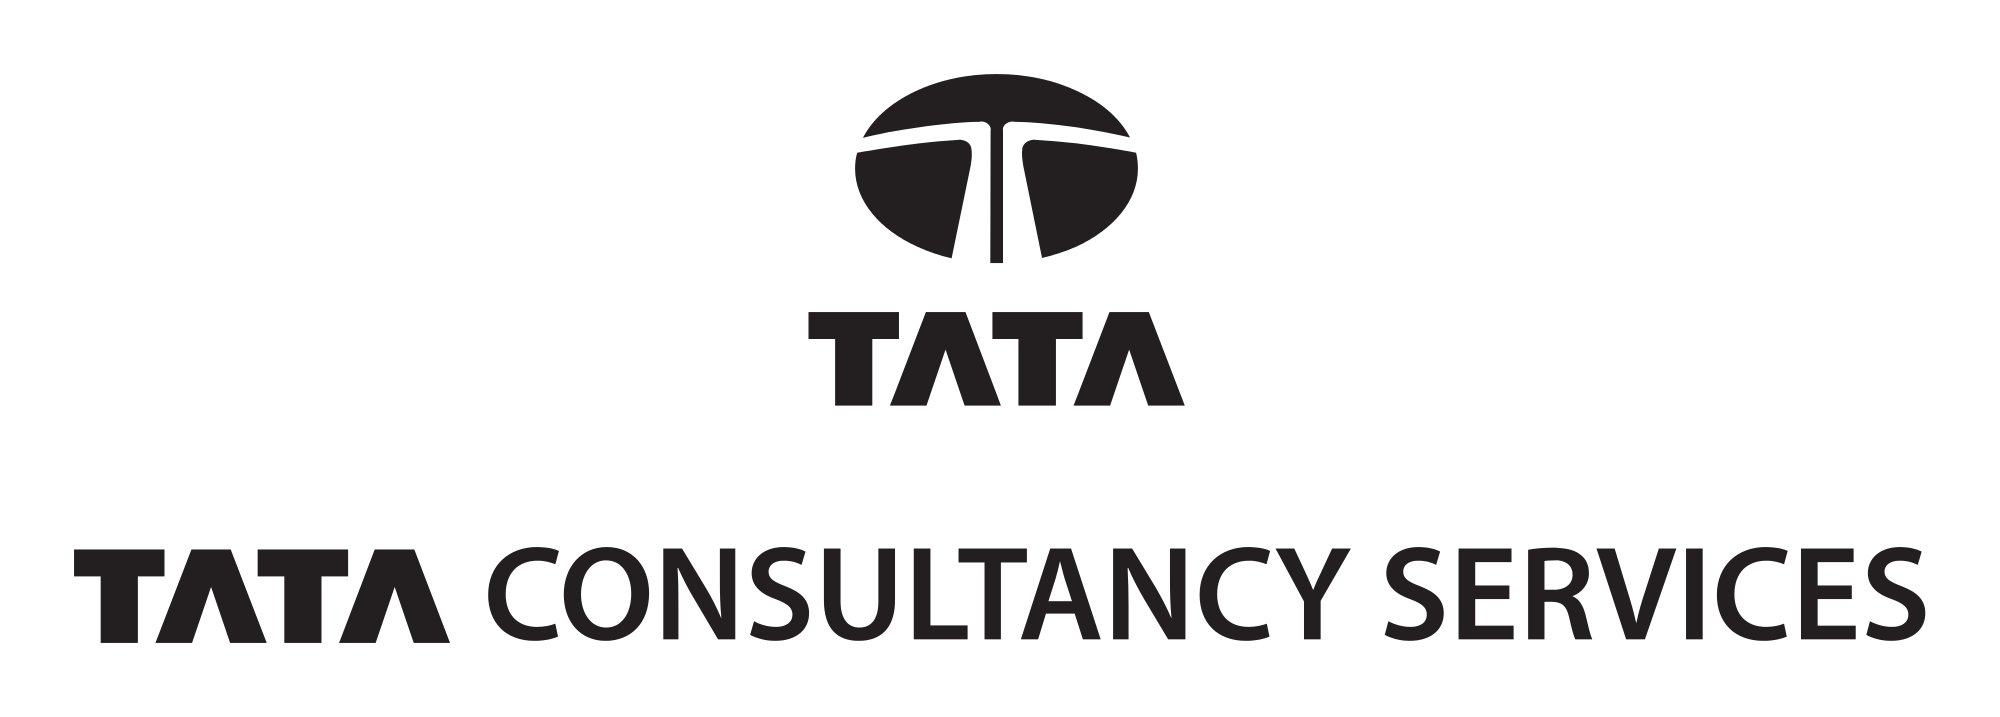 Tata Consultancy Services Logo - File:TATA Consultancy Services Logo blue.svg - Wikimedia Commons